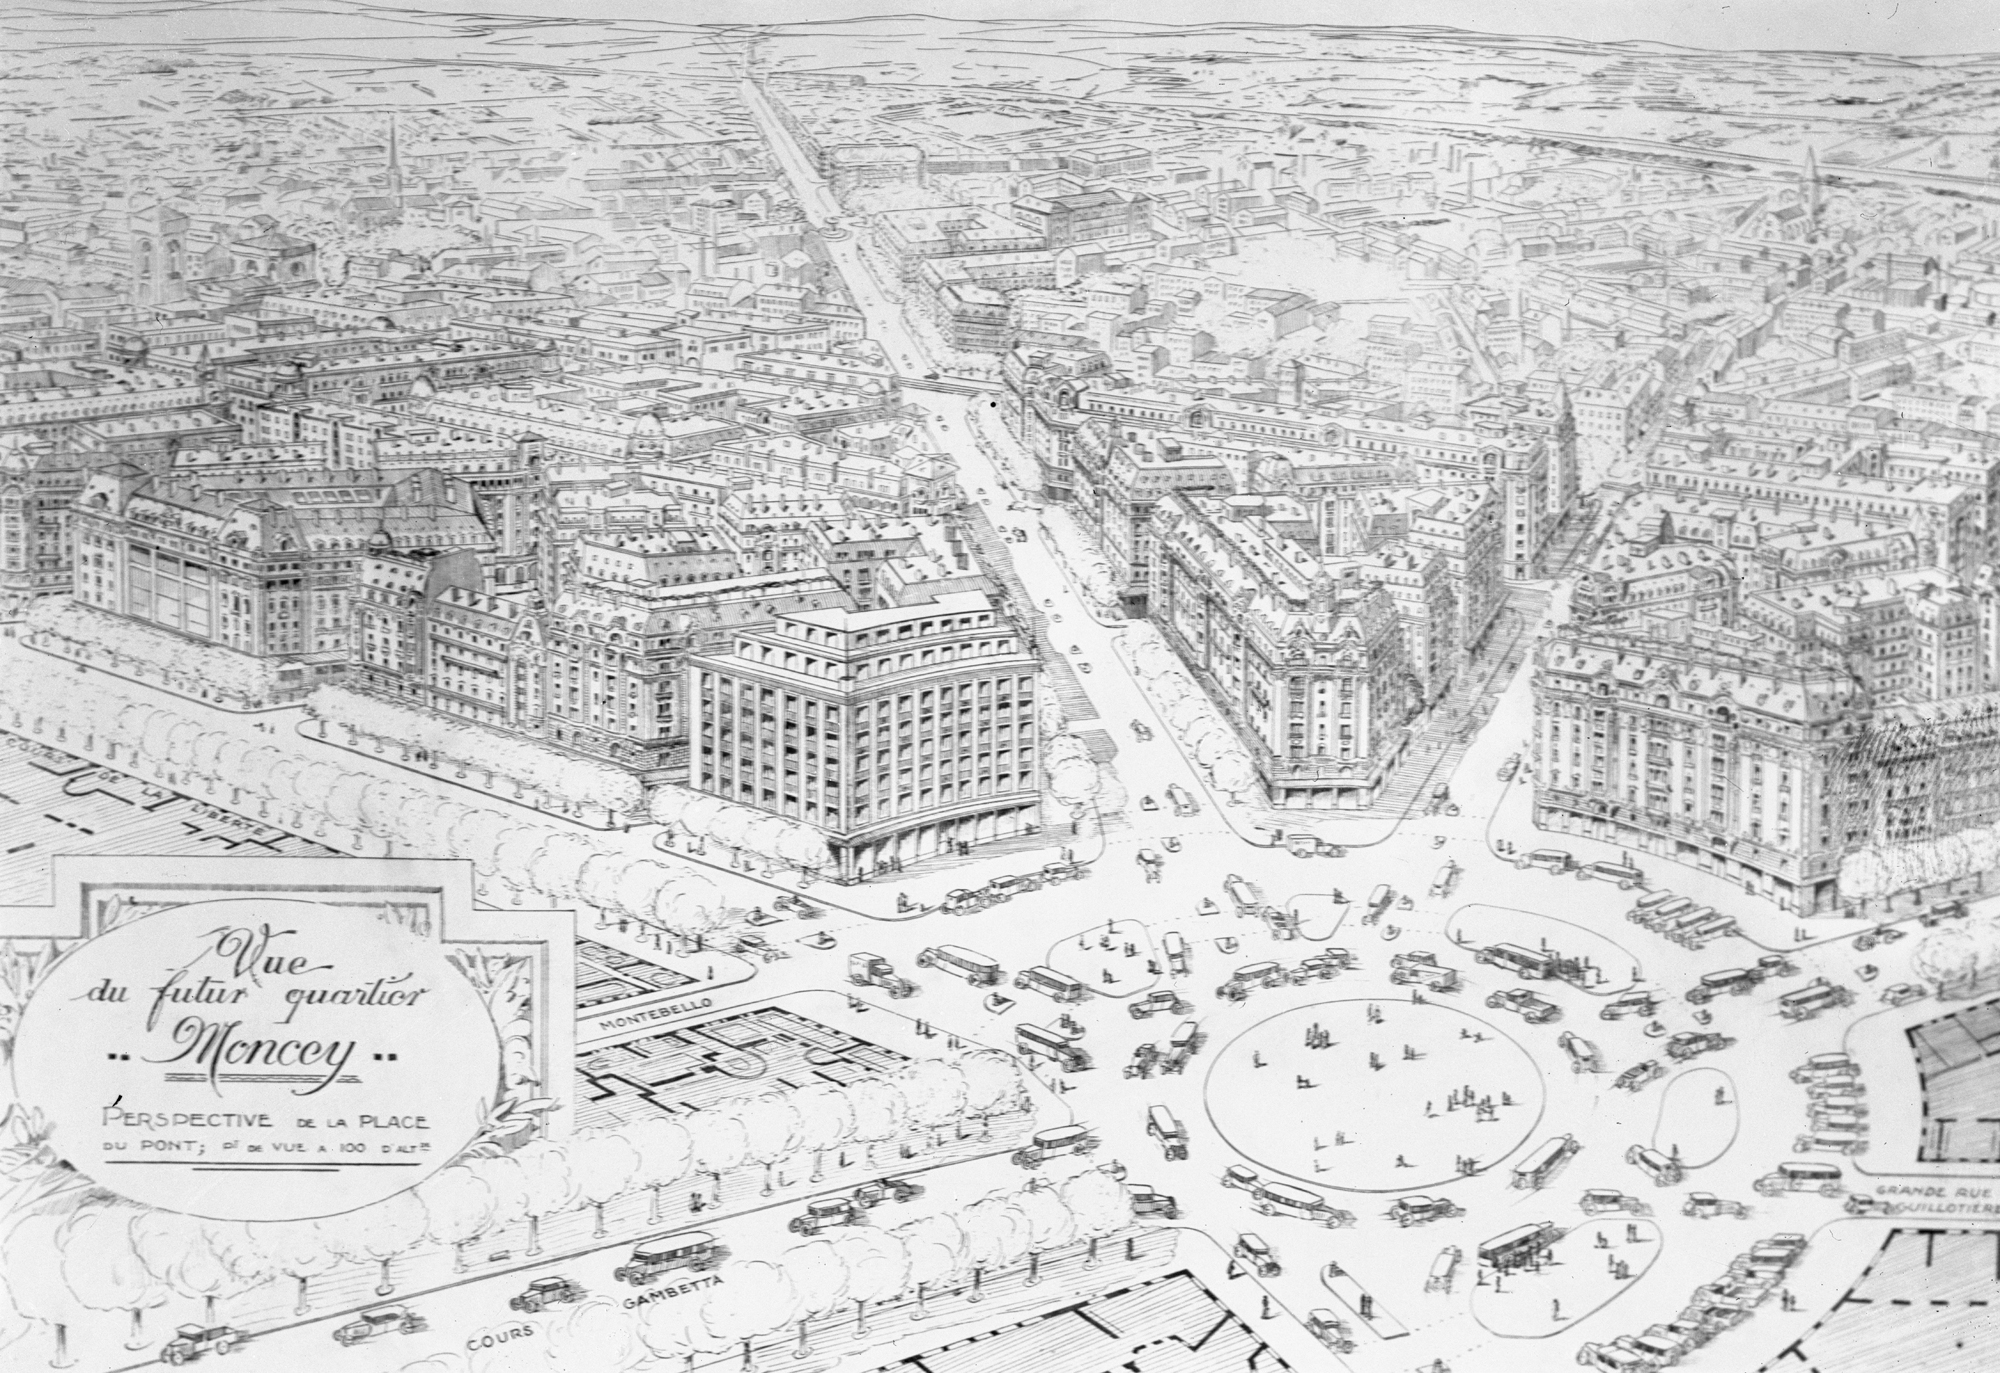 Projet du futur quartier Moncey par C. Chalumeau, perspective de la place du Pont : photographie NB sur plaque de verre (20/06/1935, cote : 15PH/1/377)